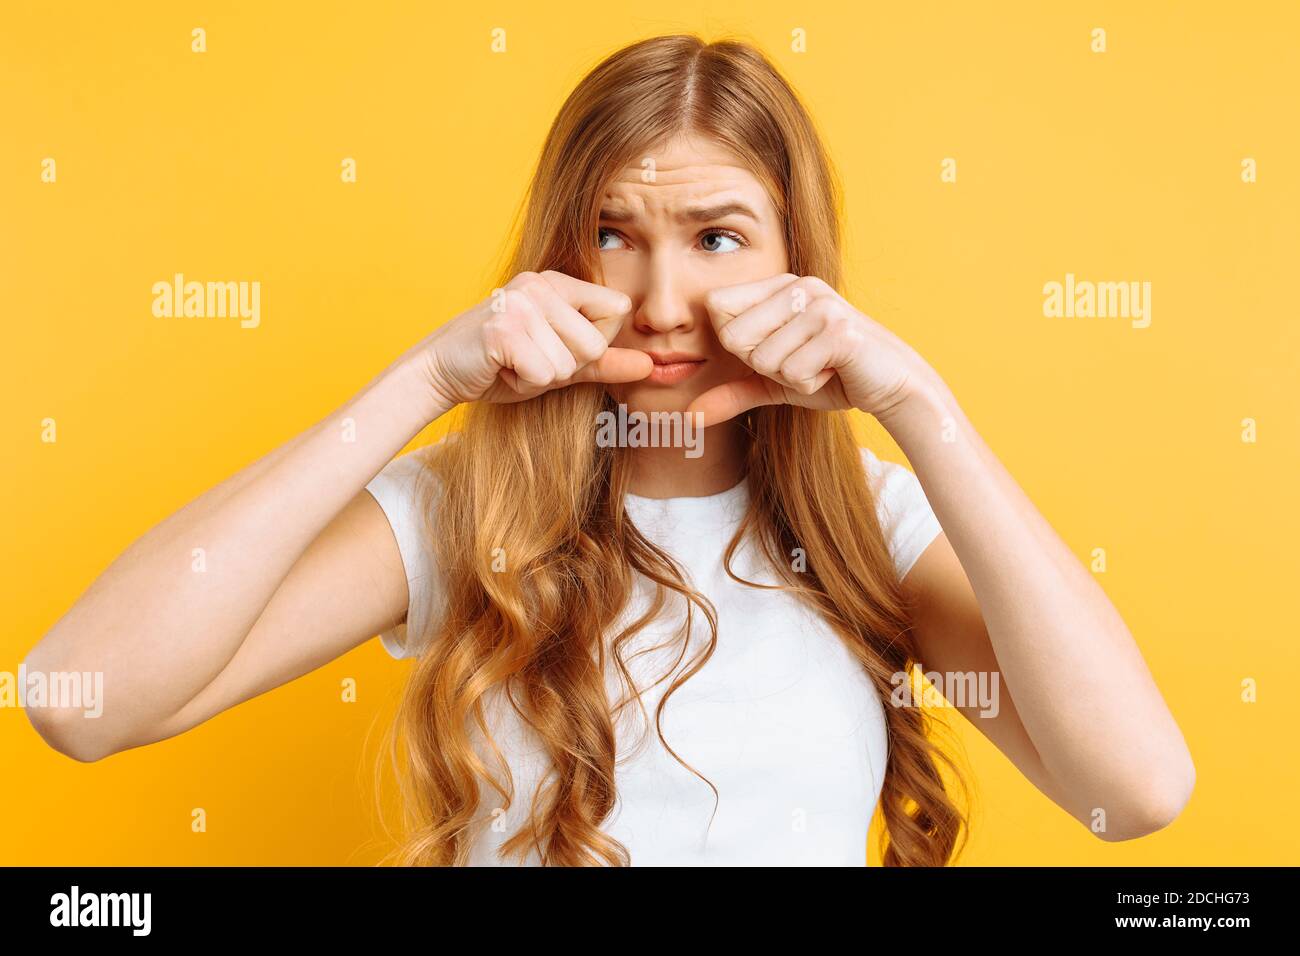 beautiful girl upset, woman crying on yellow background, bad mood Stock Photo